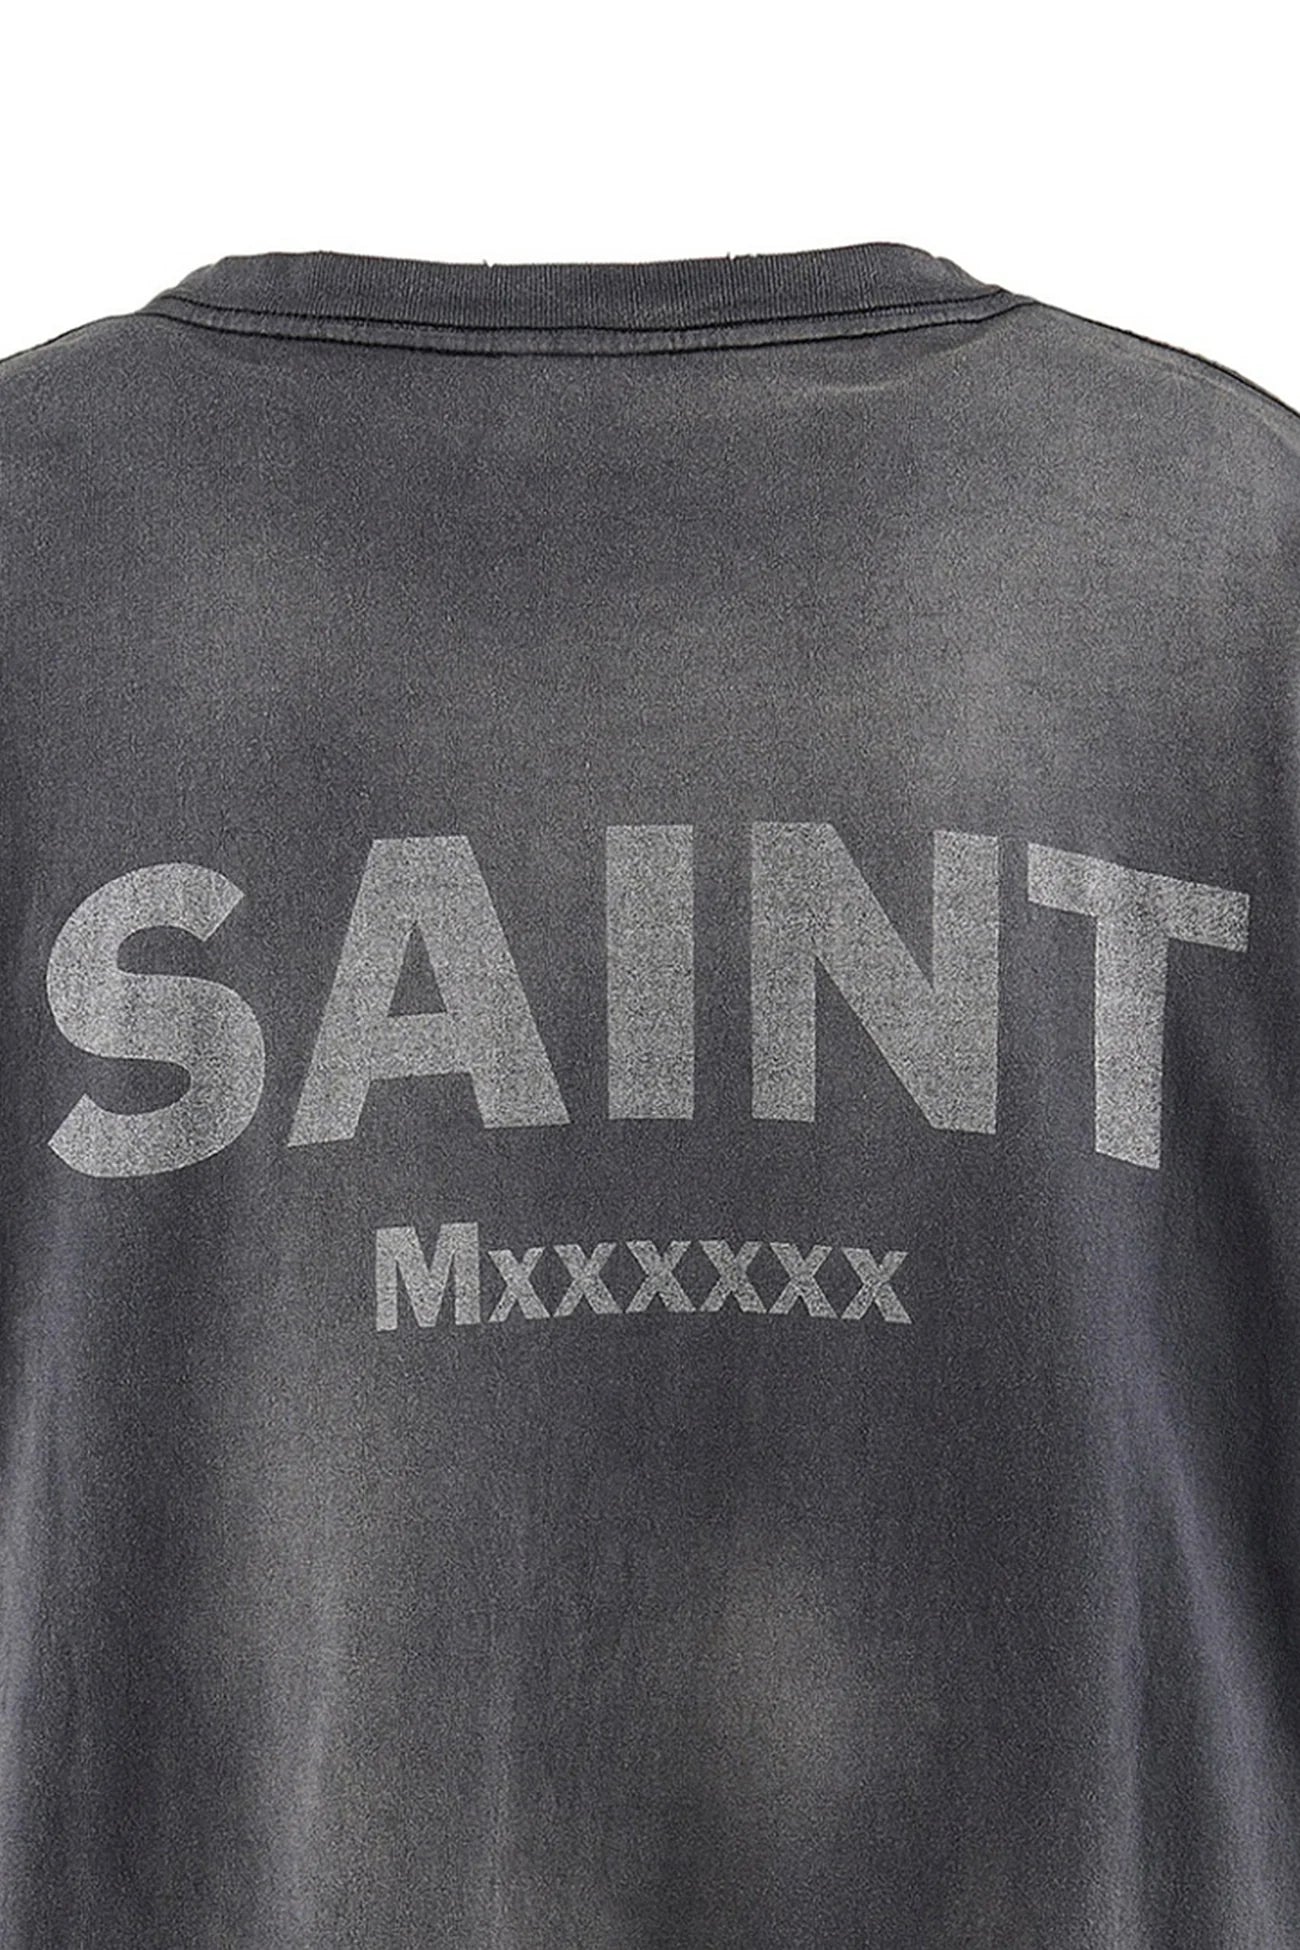 Saint Michael x Neon Genesis Evangelion Tee Black - Supra Sneakers